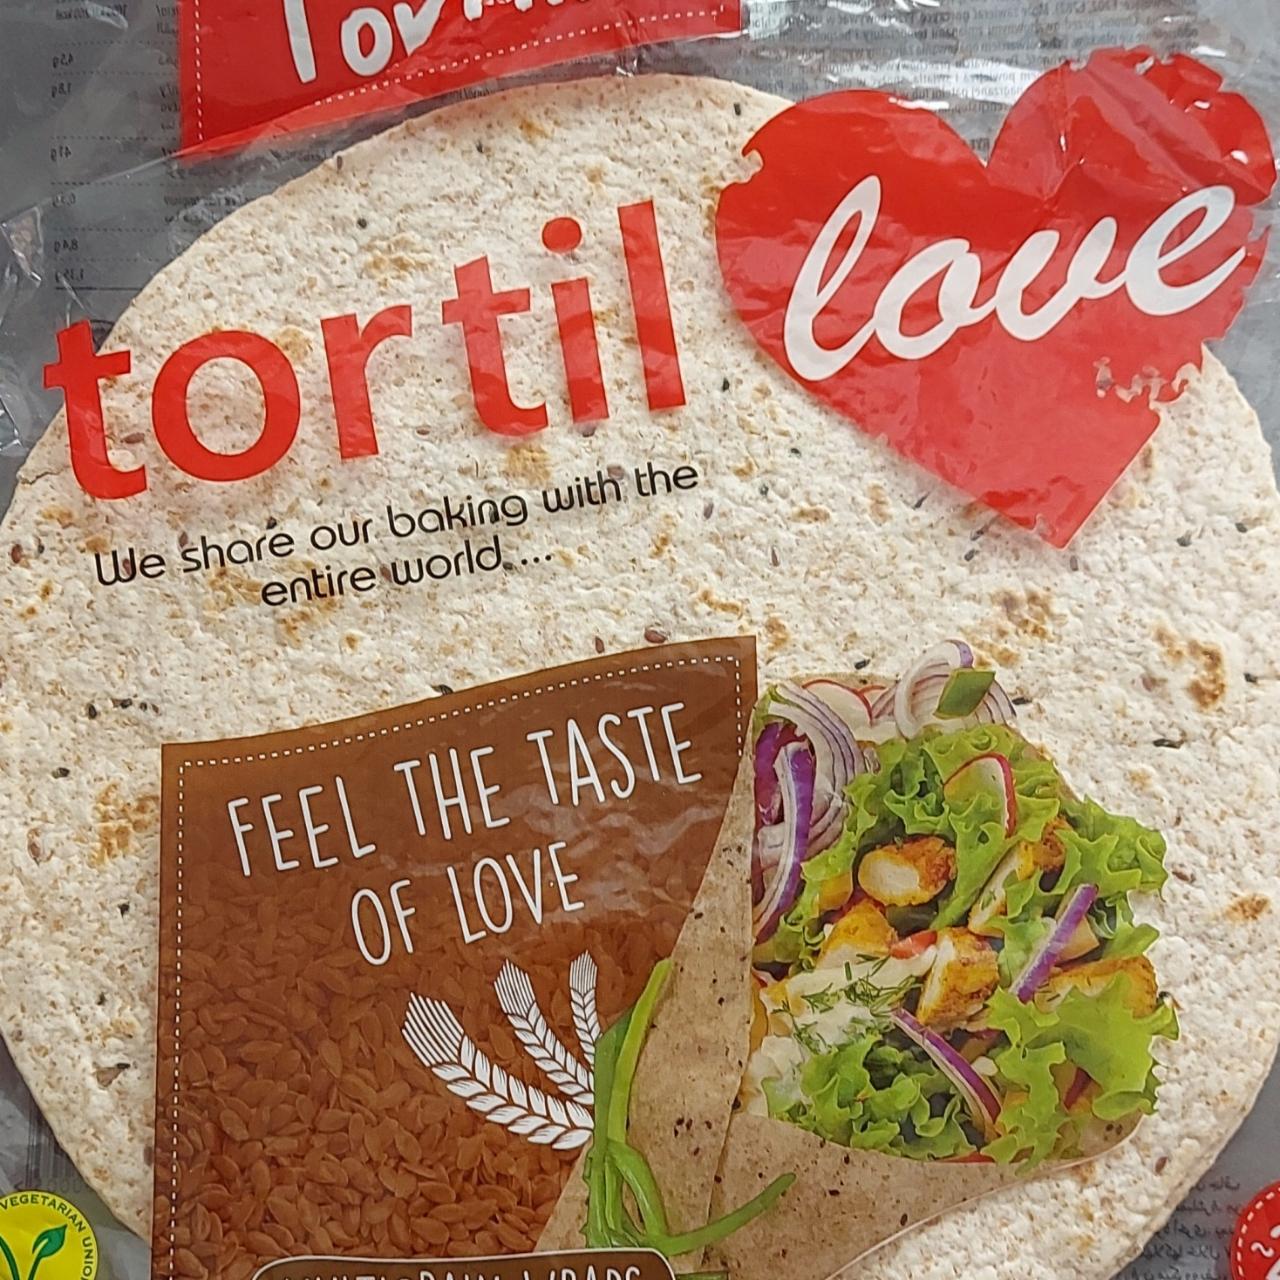 Zdjęcia - Tortillove pszenno-żytnia wieloziarnista z nasionami lnu i czarnuszka Tortilla